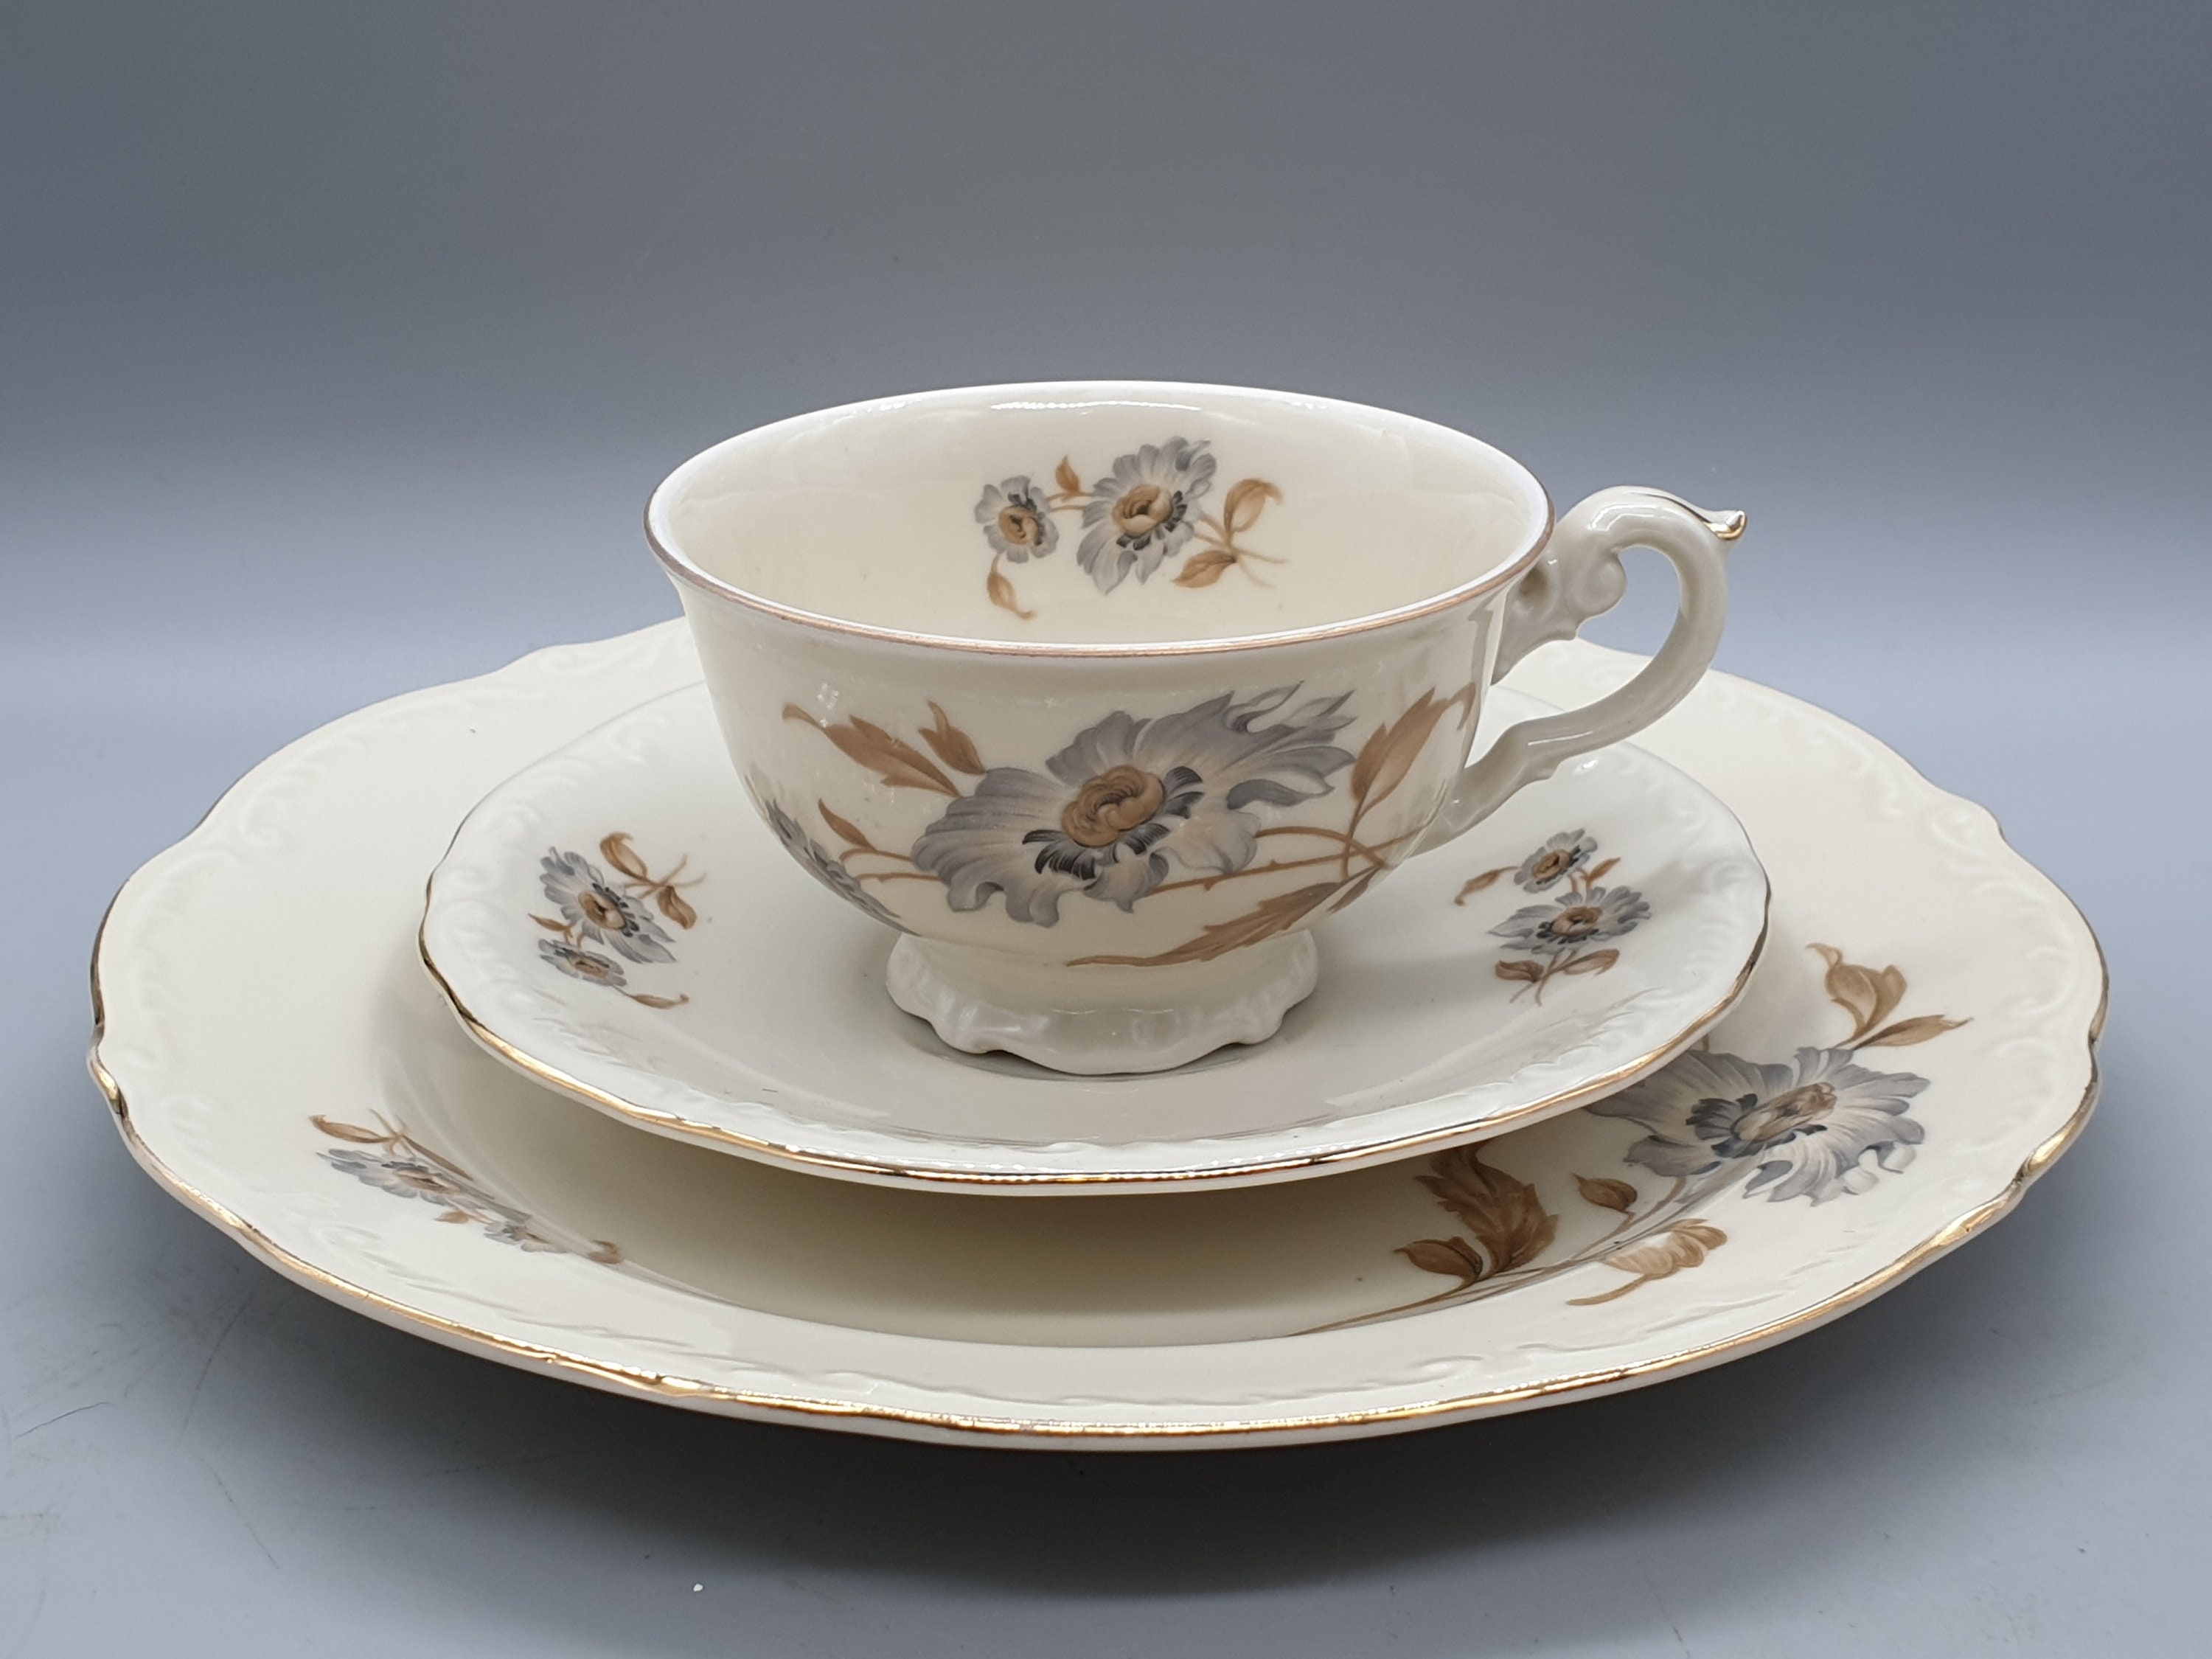 Tasse à thé ronde basse porcelaine blanche 18 cl + soucoupe D 15 cm - 1001  Fêtes